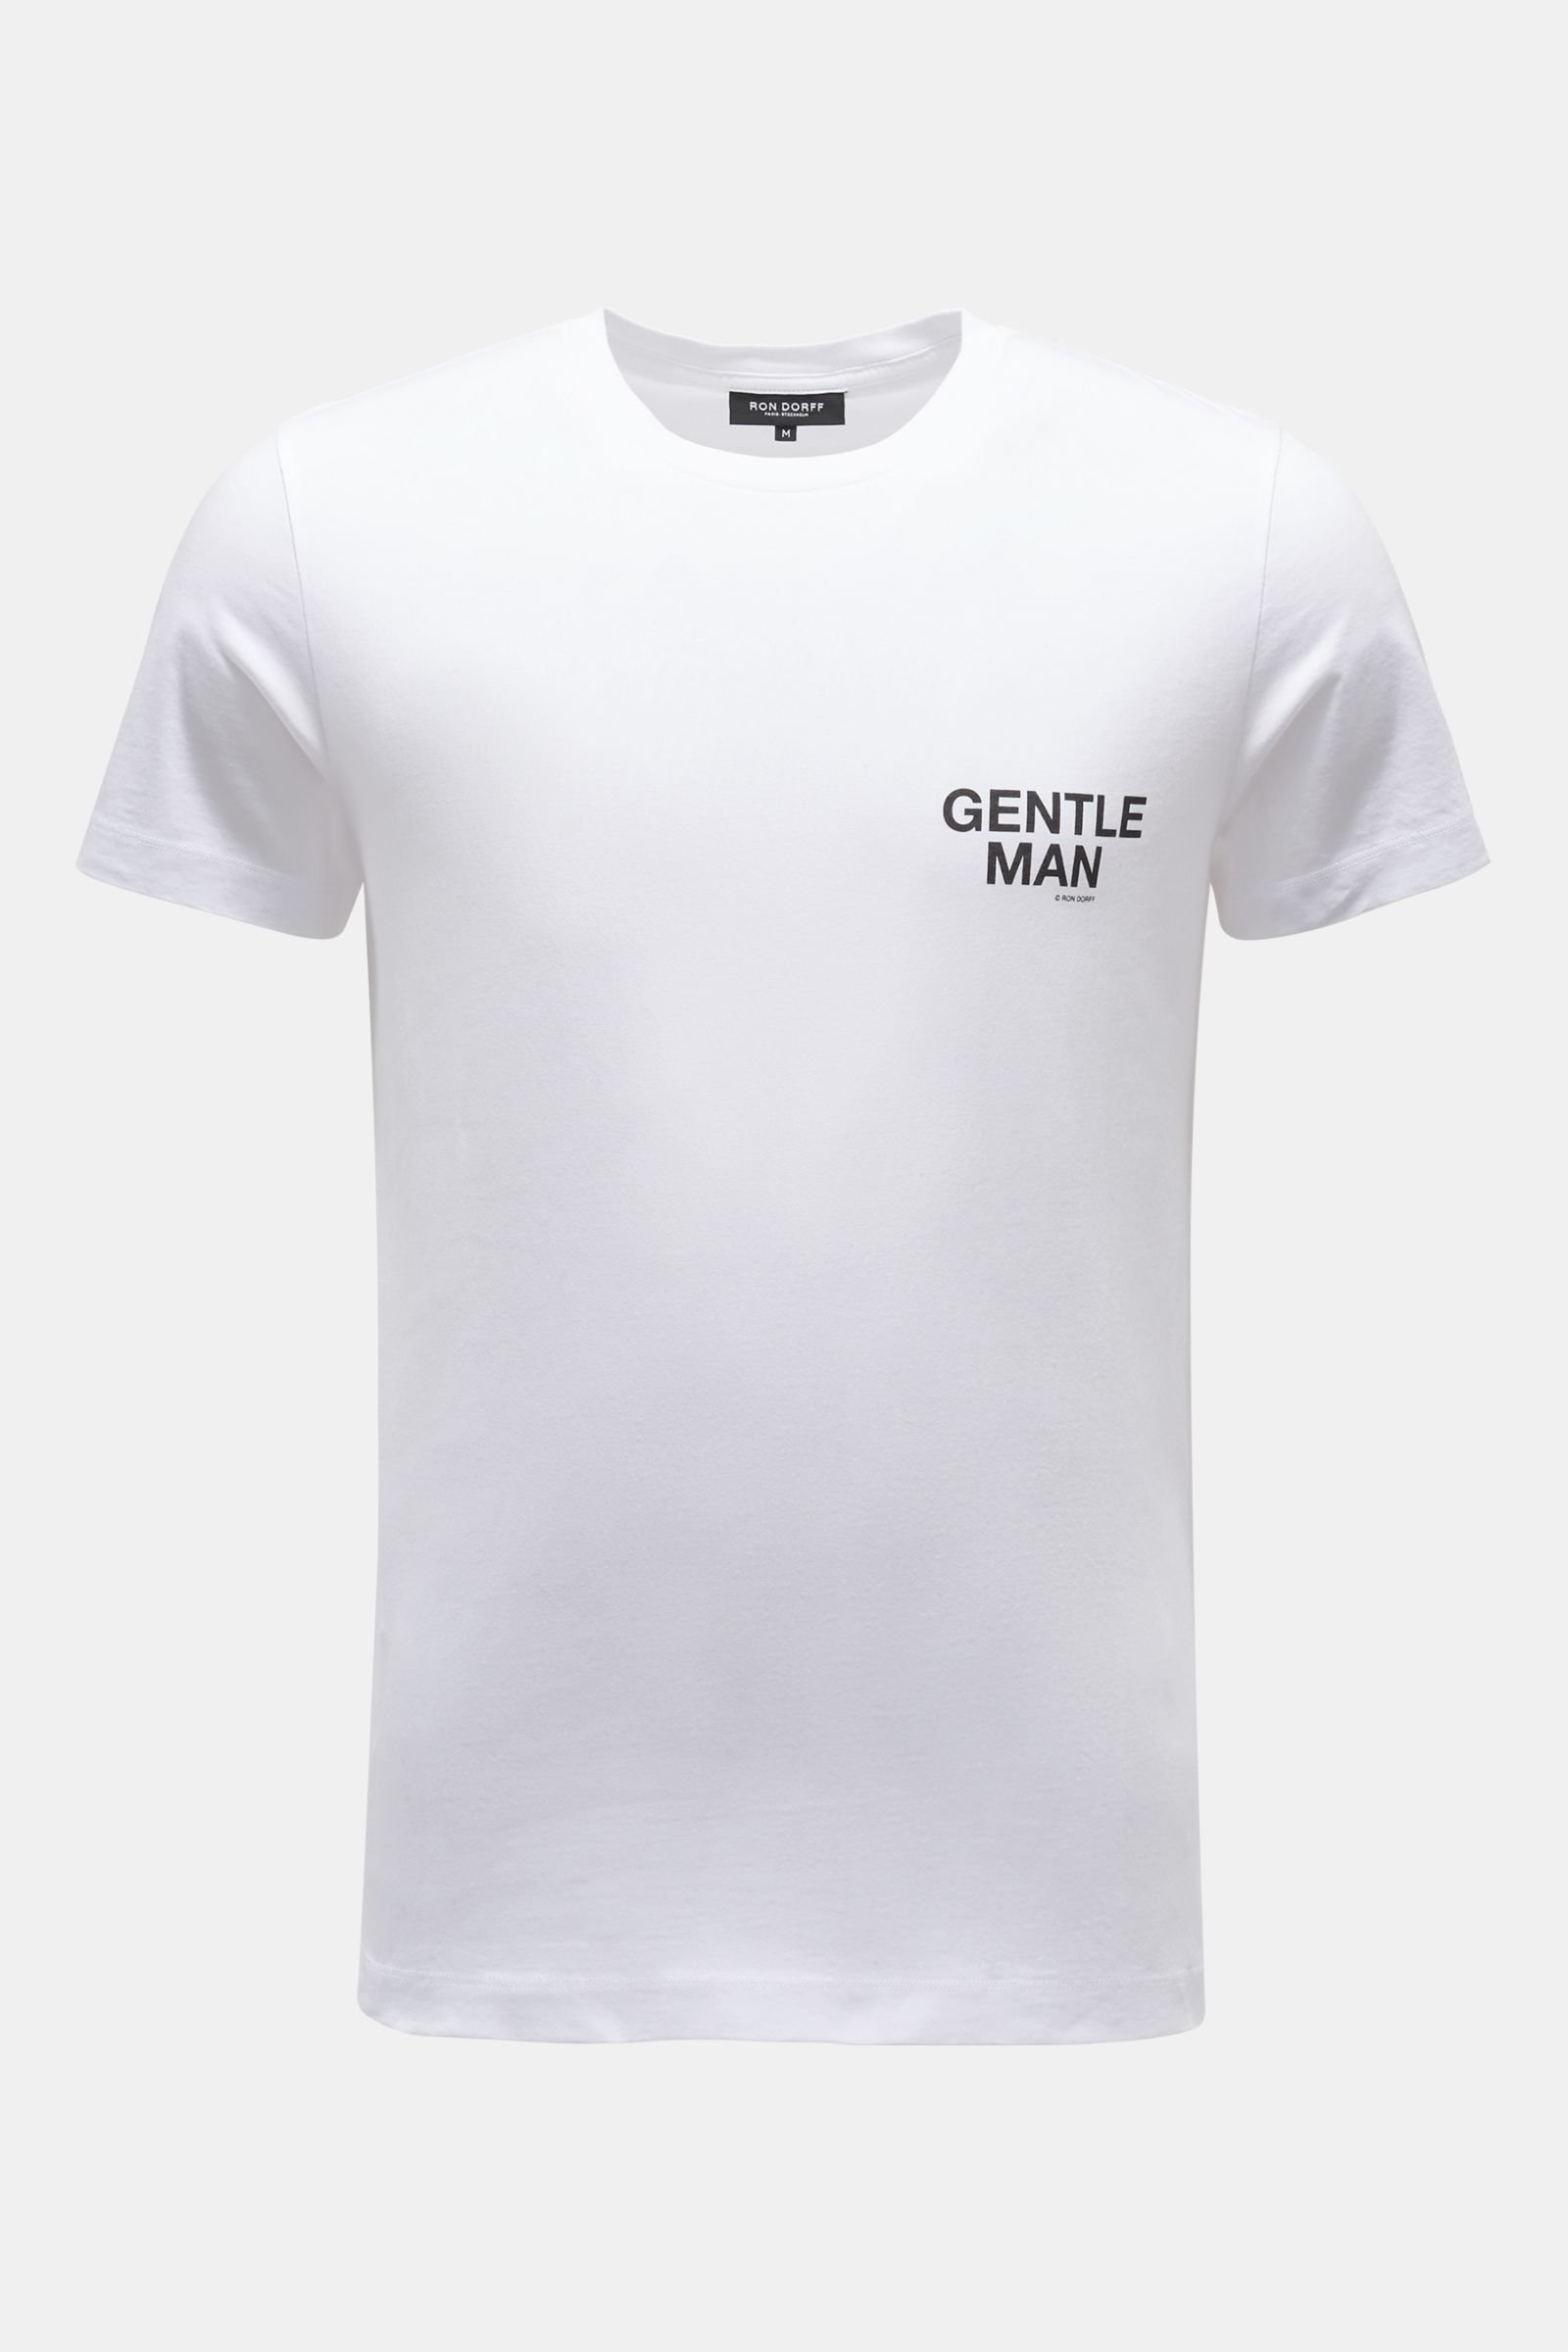 Crew neck T-shirt 'Gentle Man' white